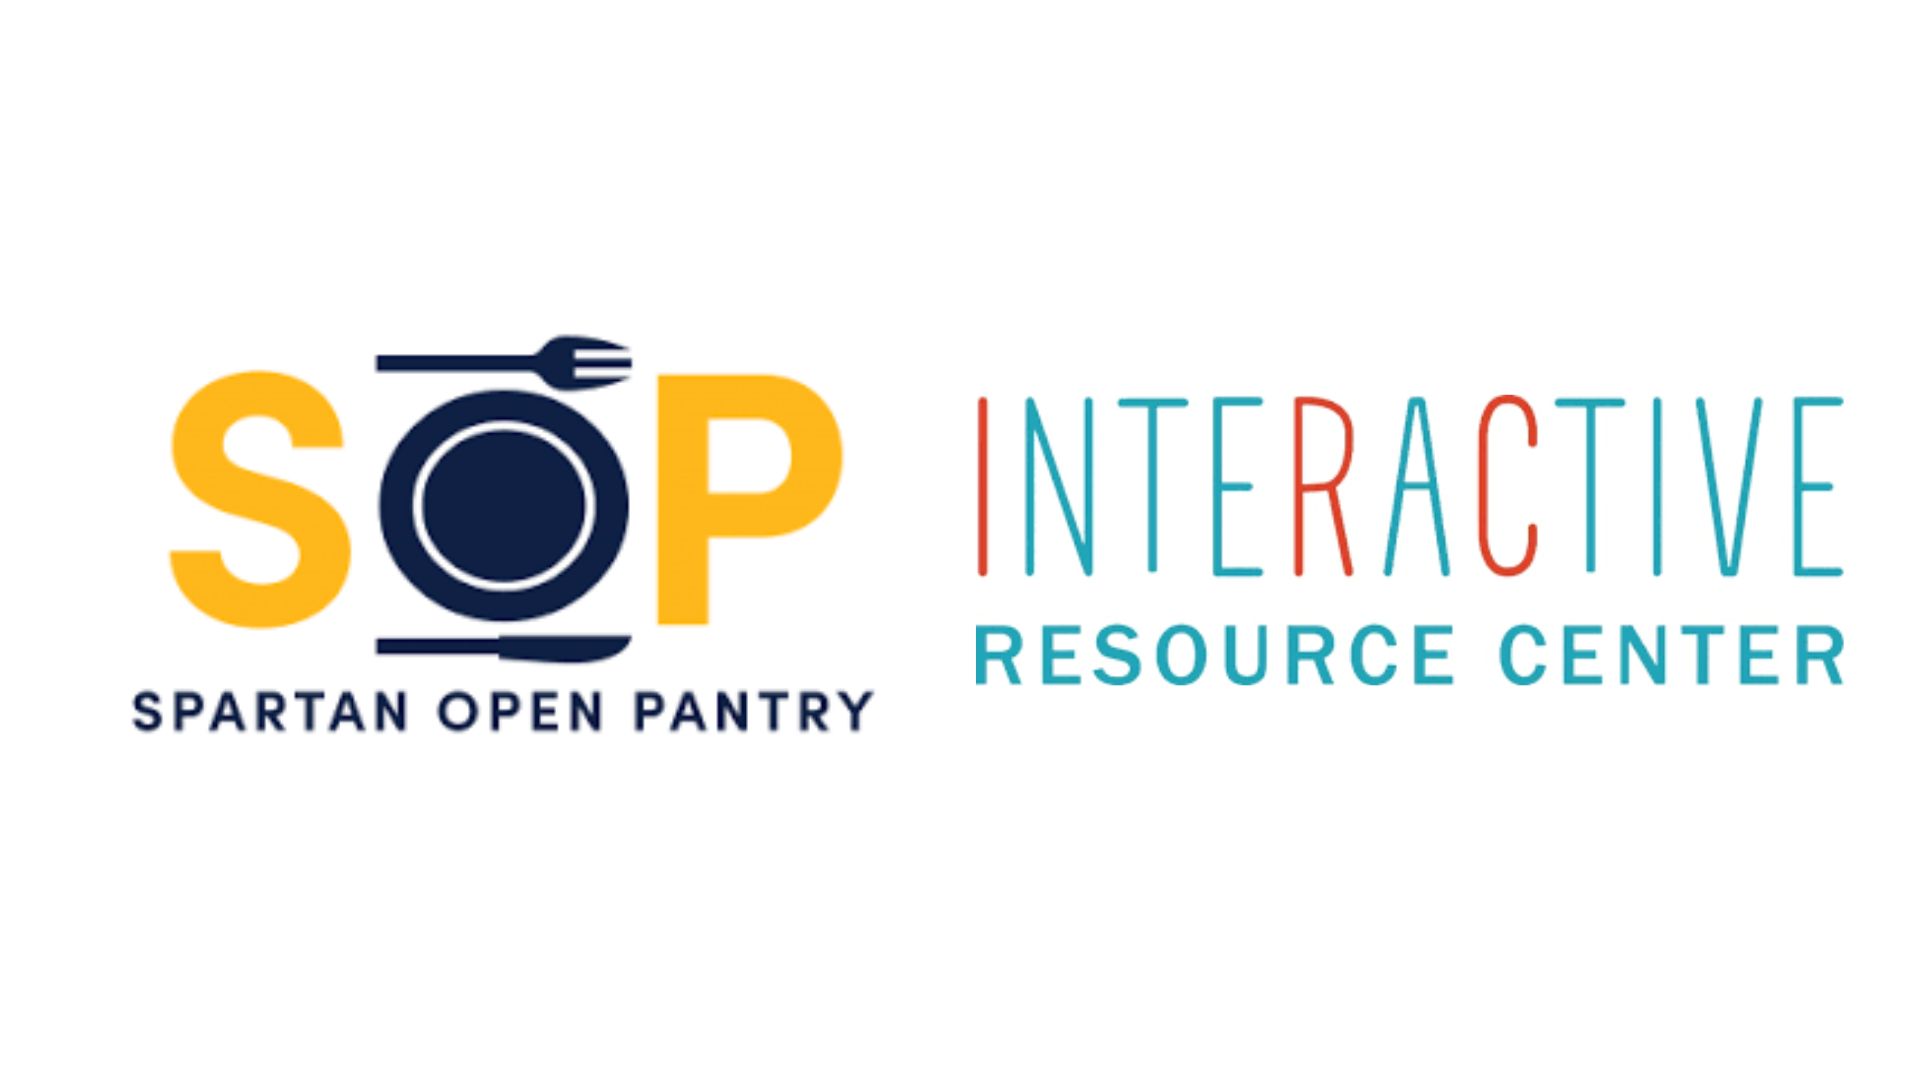 Spartan Open Pantry & Interactive Resource Center Logos